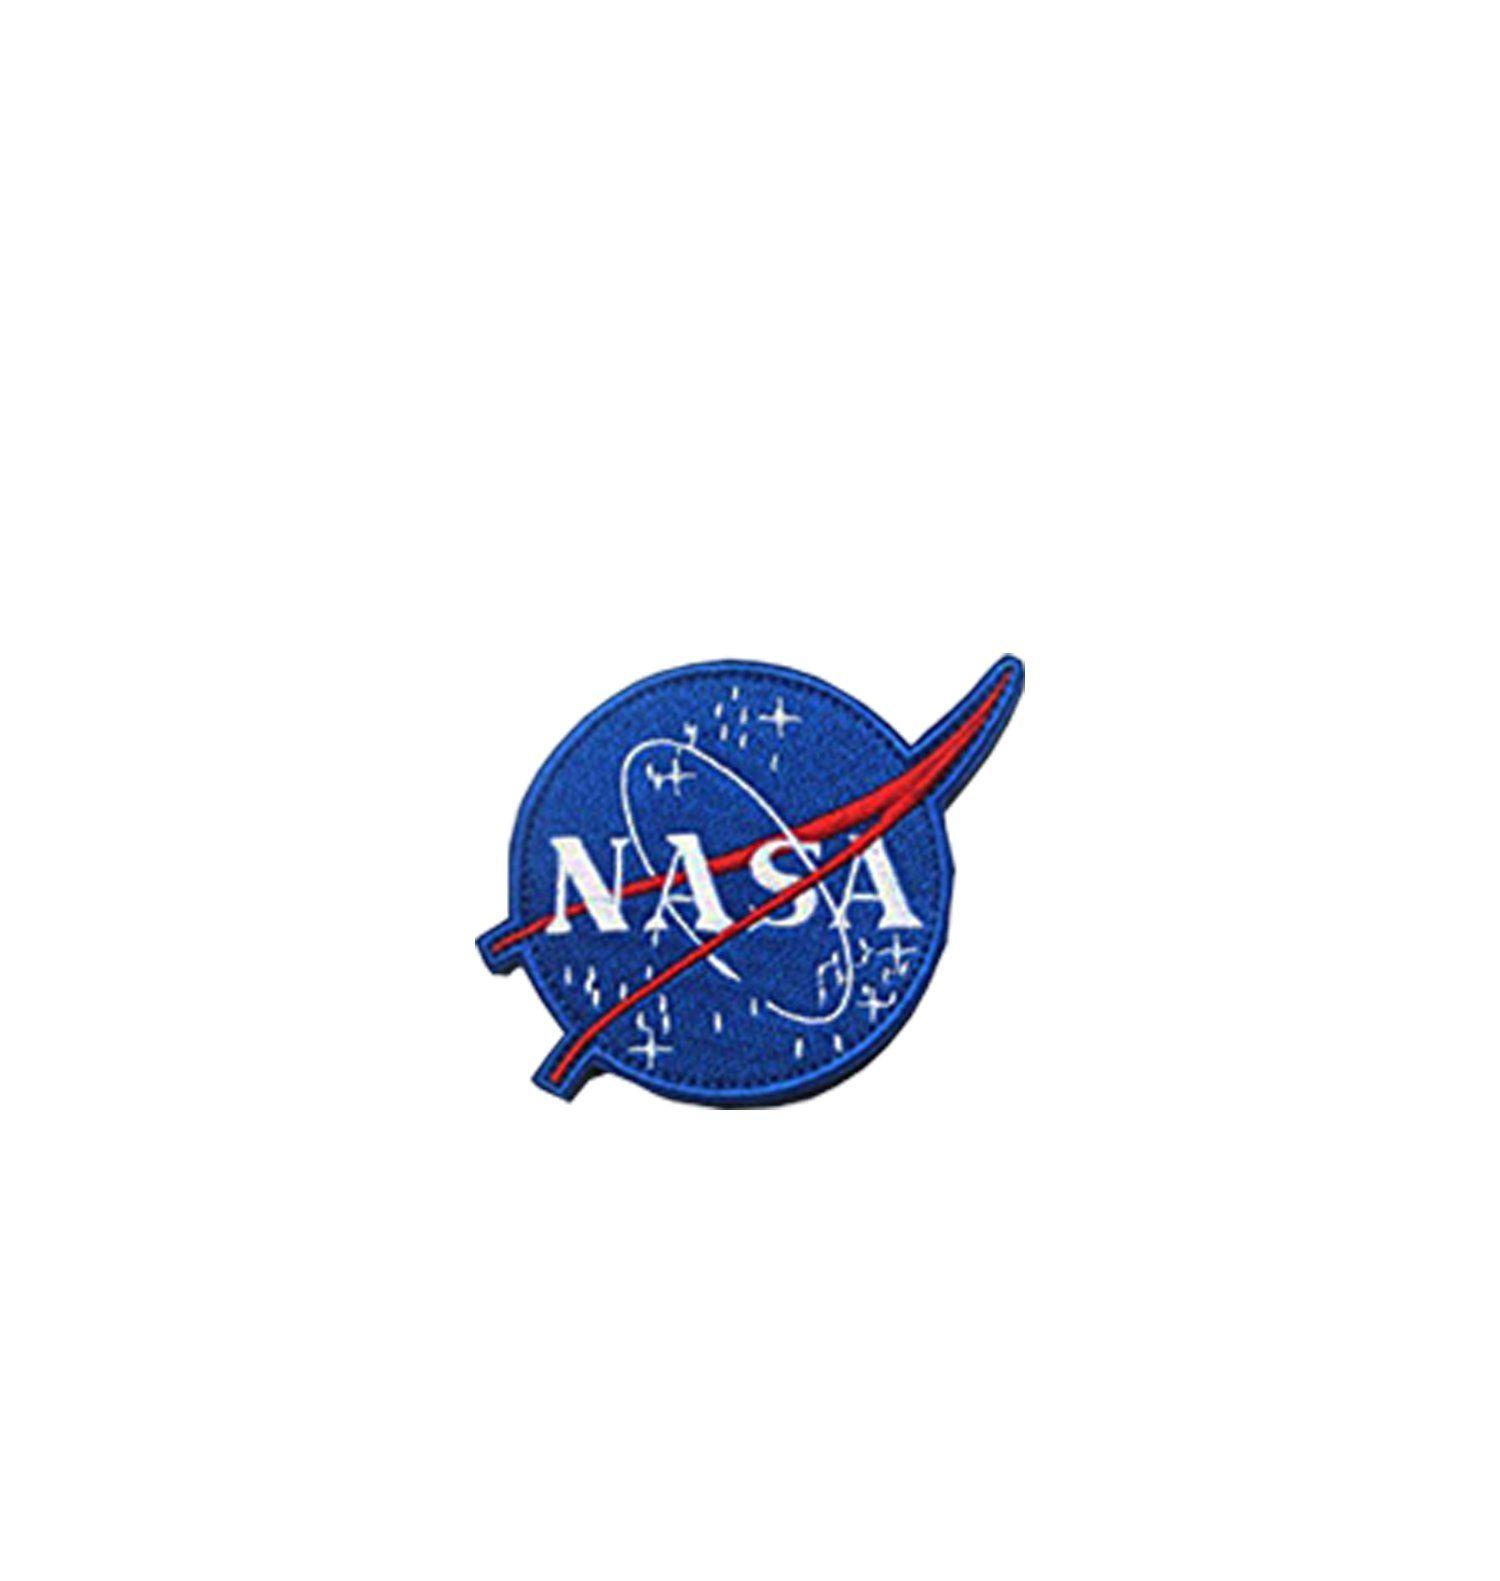 Official NASA Meatball Logo - PATCH - NASA MEATBALL LOGO - STAR CADET